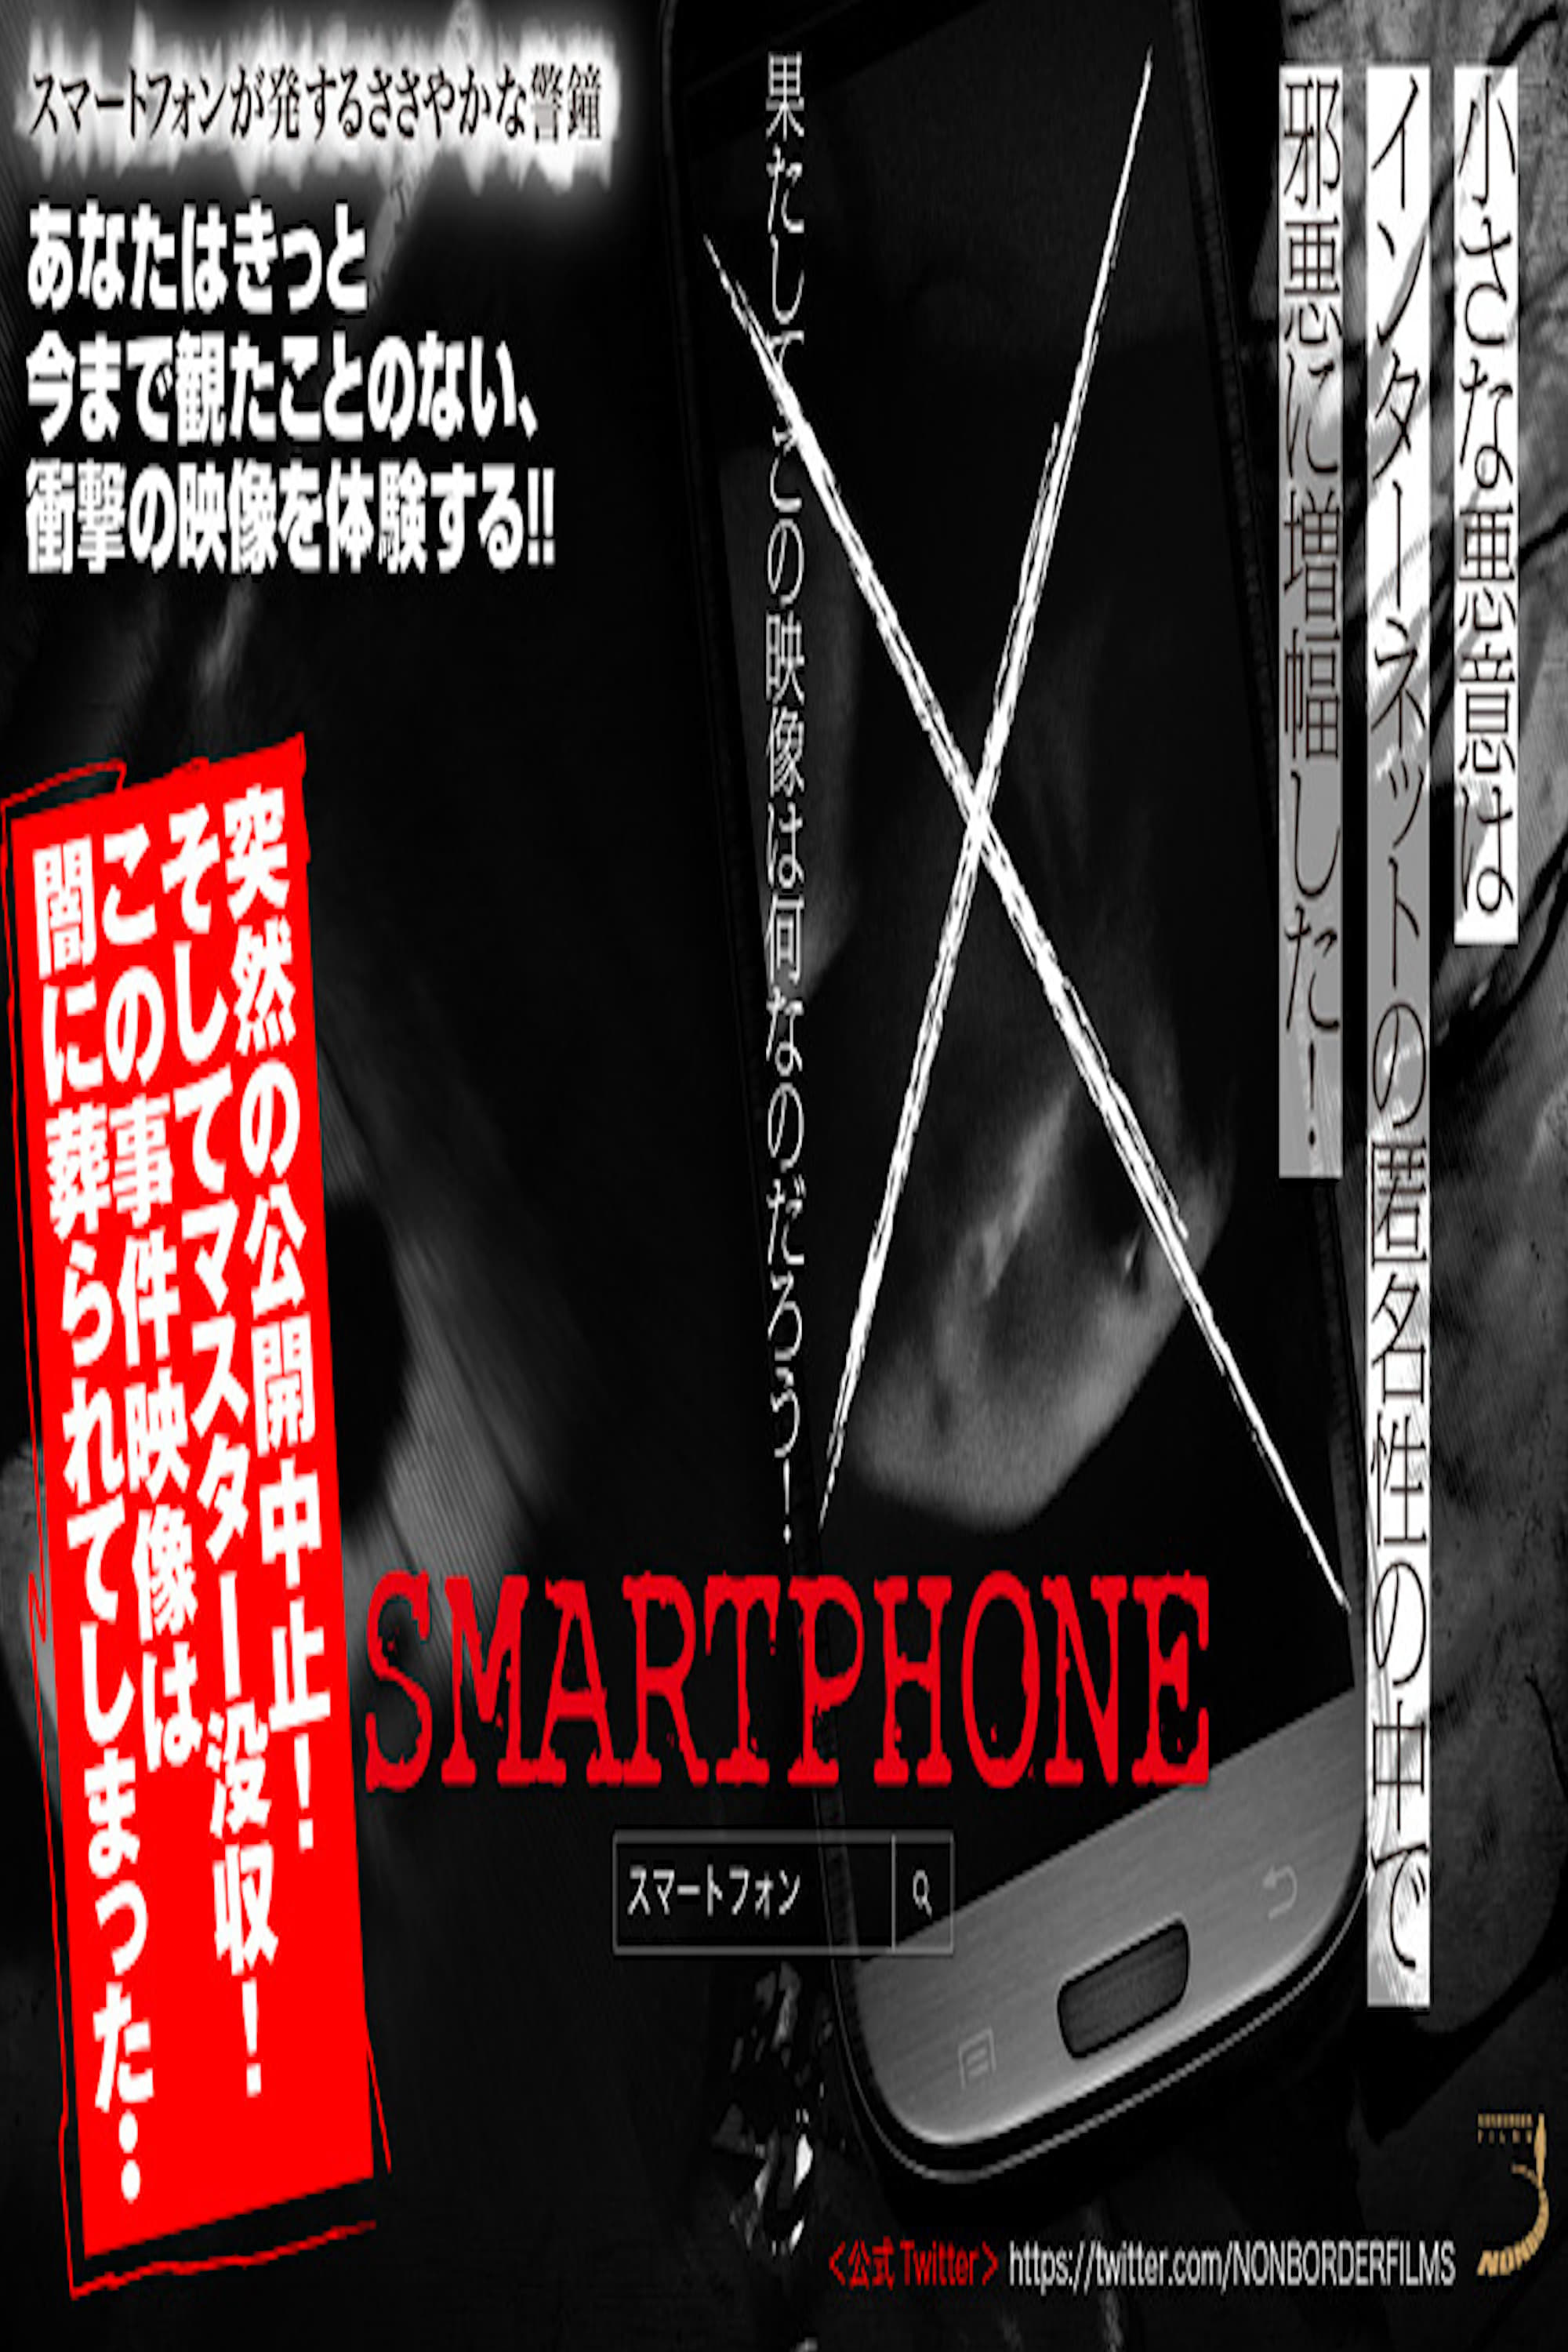 Smartphone